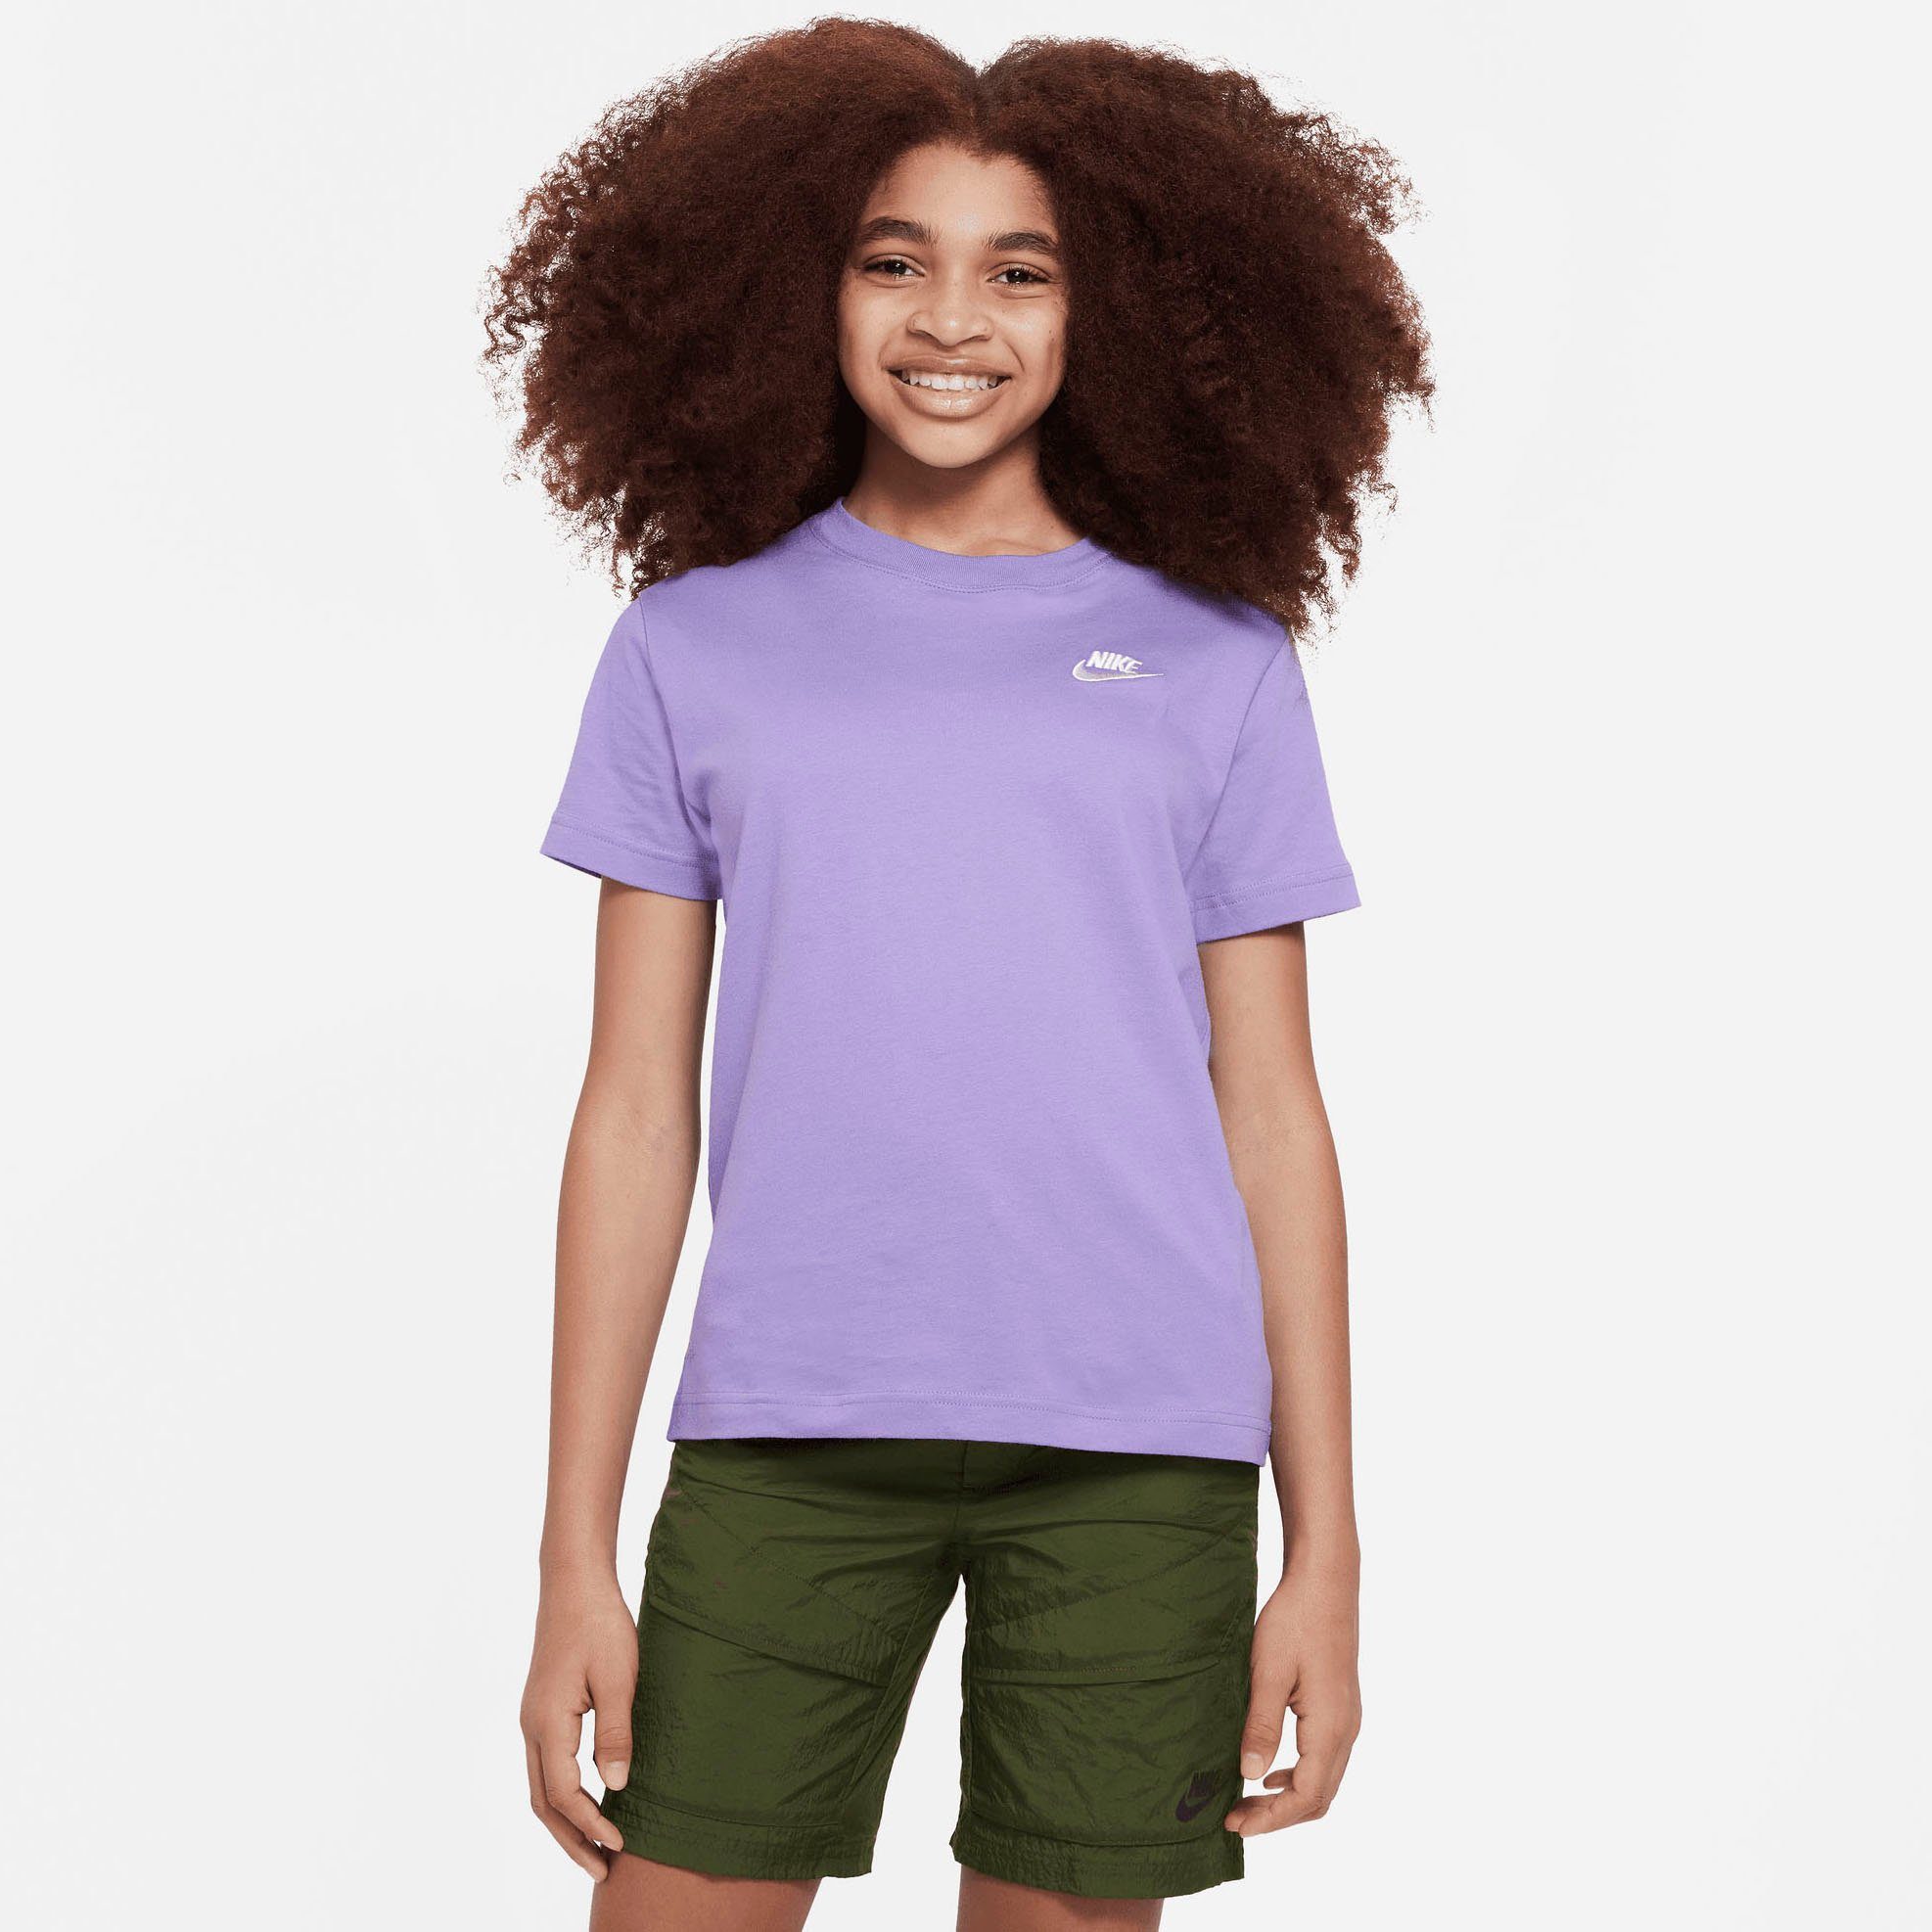 KIDS' BIG T-Shirt Sportswear T-SHIRT Nike (GIRLS) lila